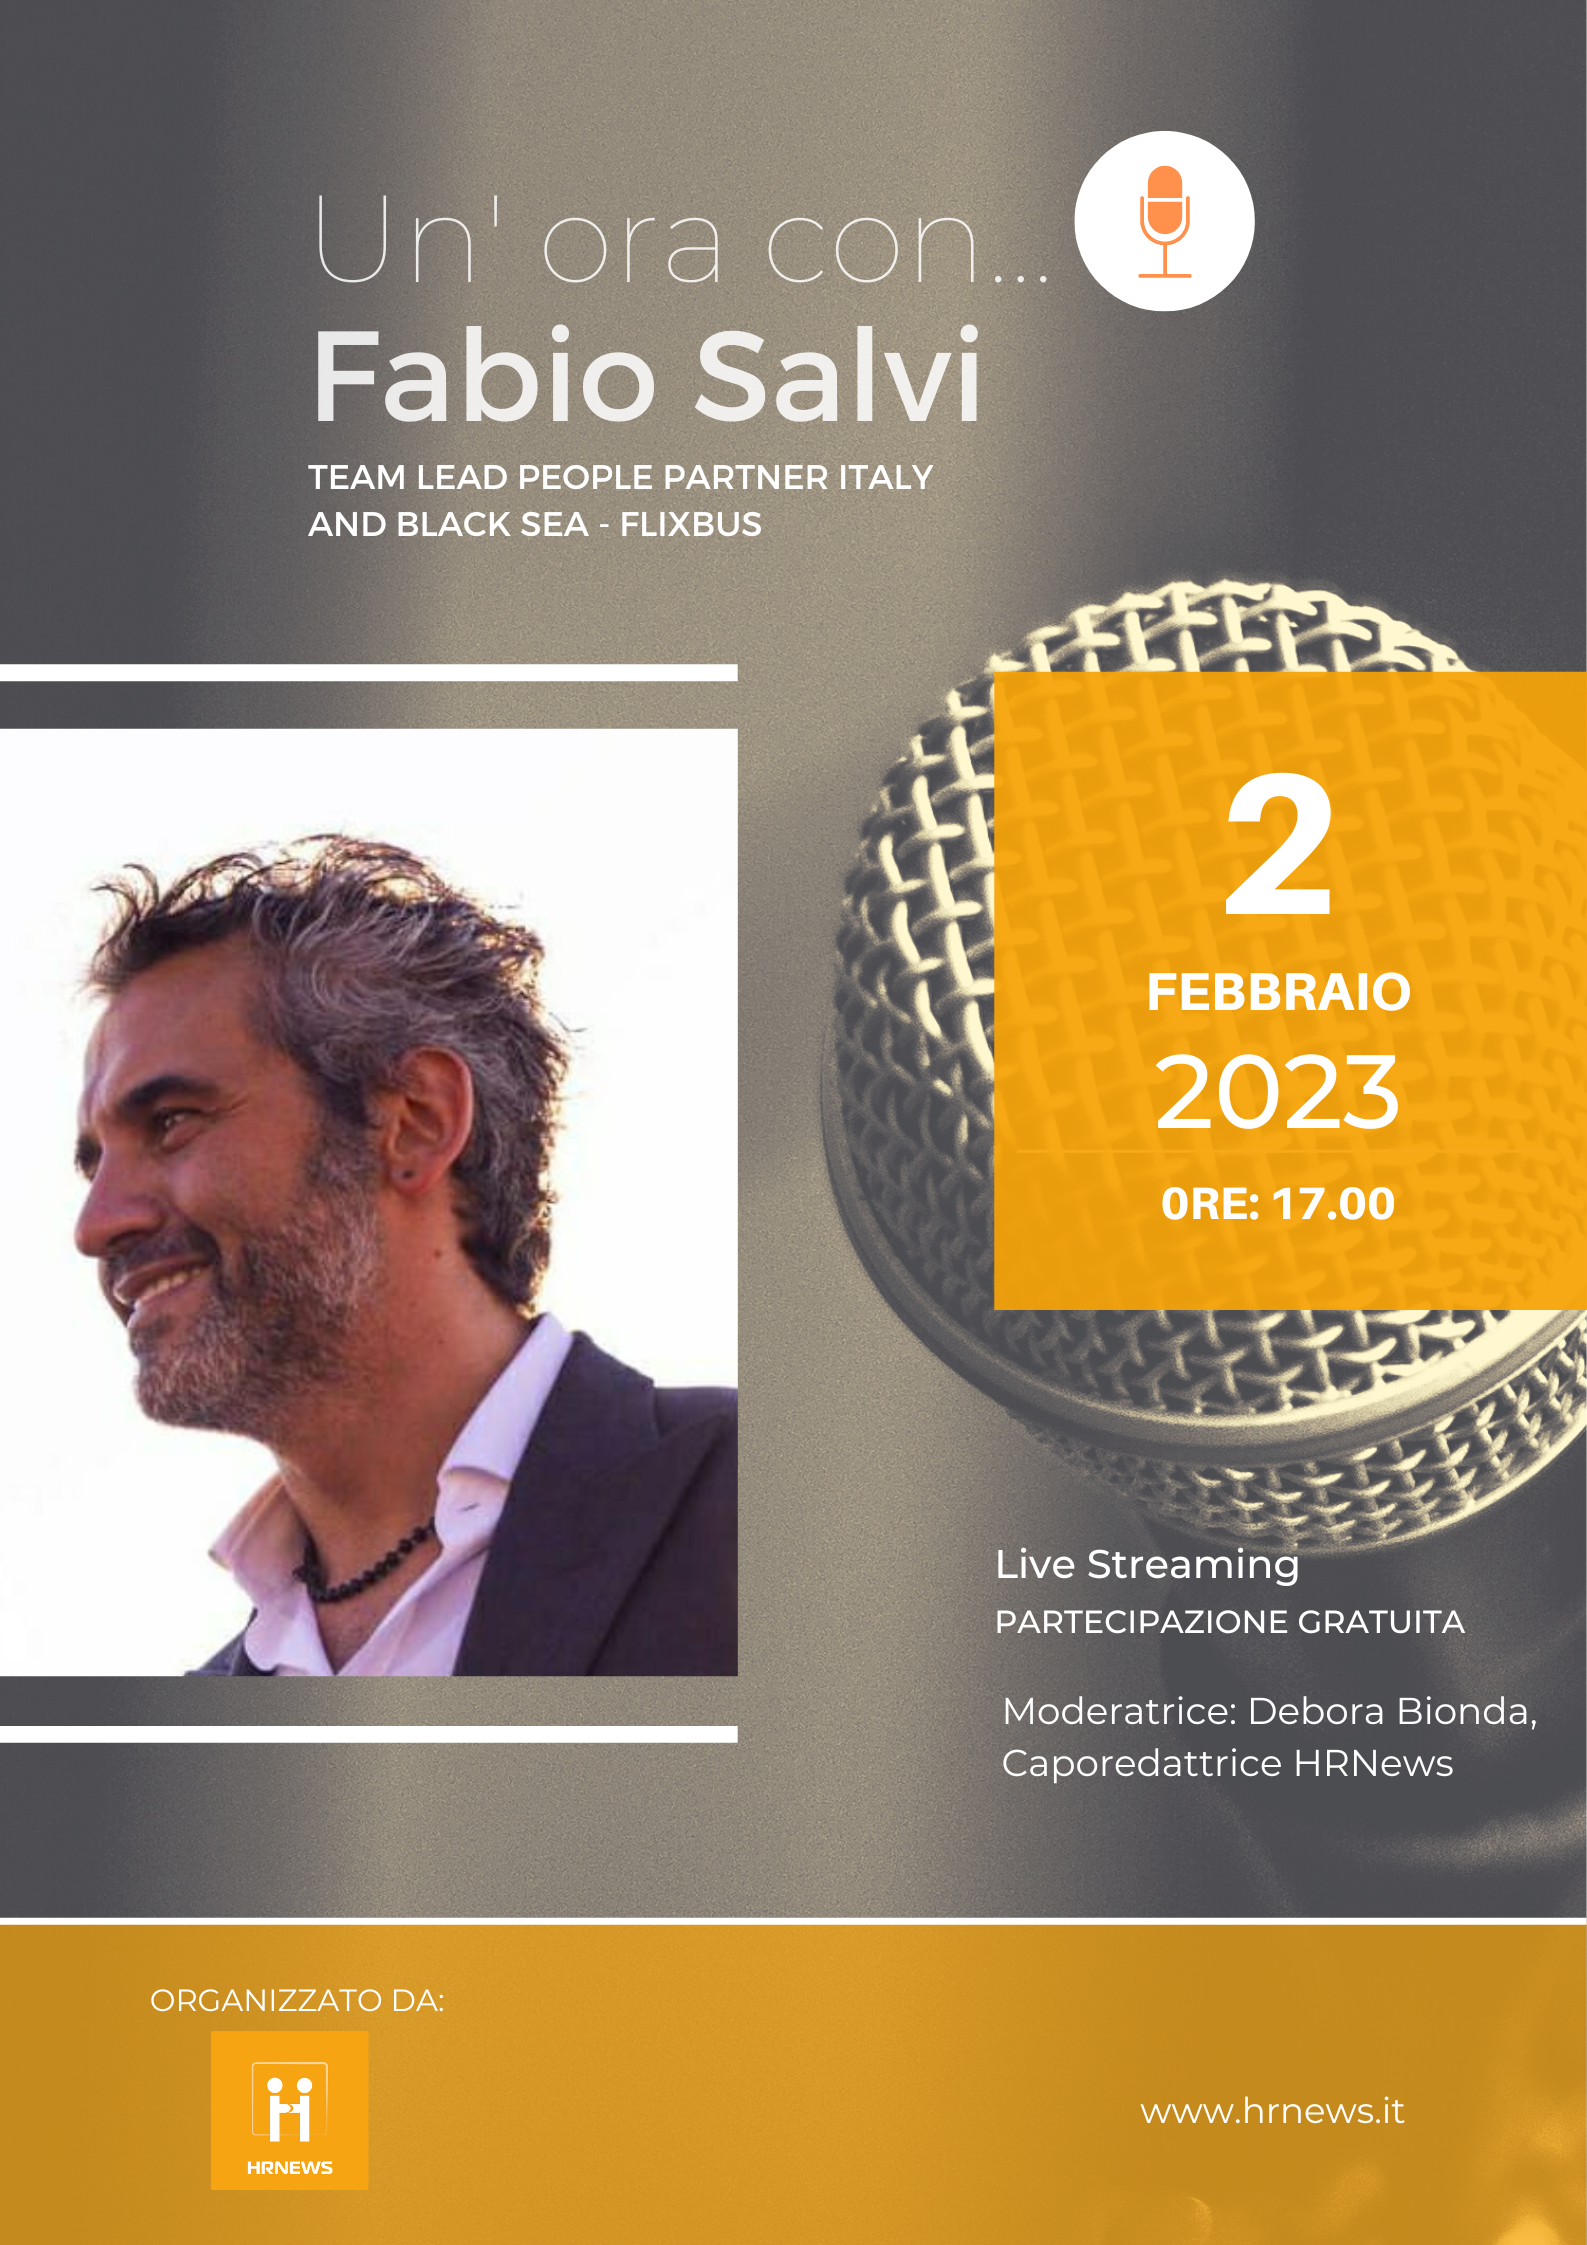 Un'ora con... Fabio Salvi - Team Lead People Partner Italy and Black Sea presso FlixBus